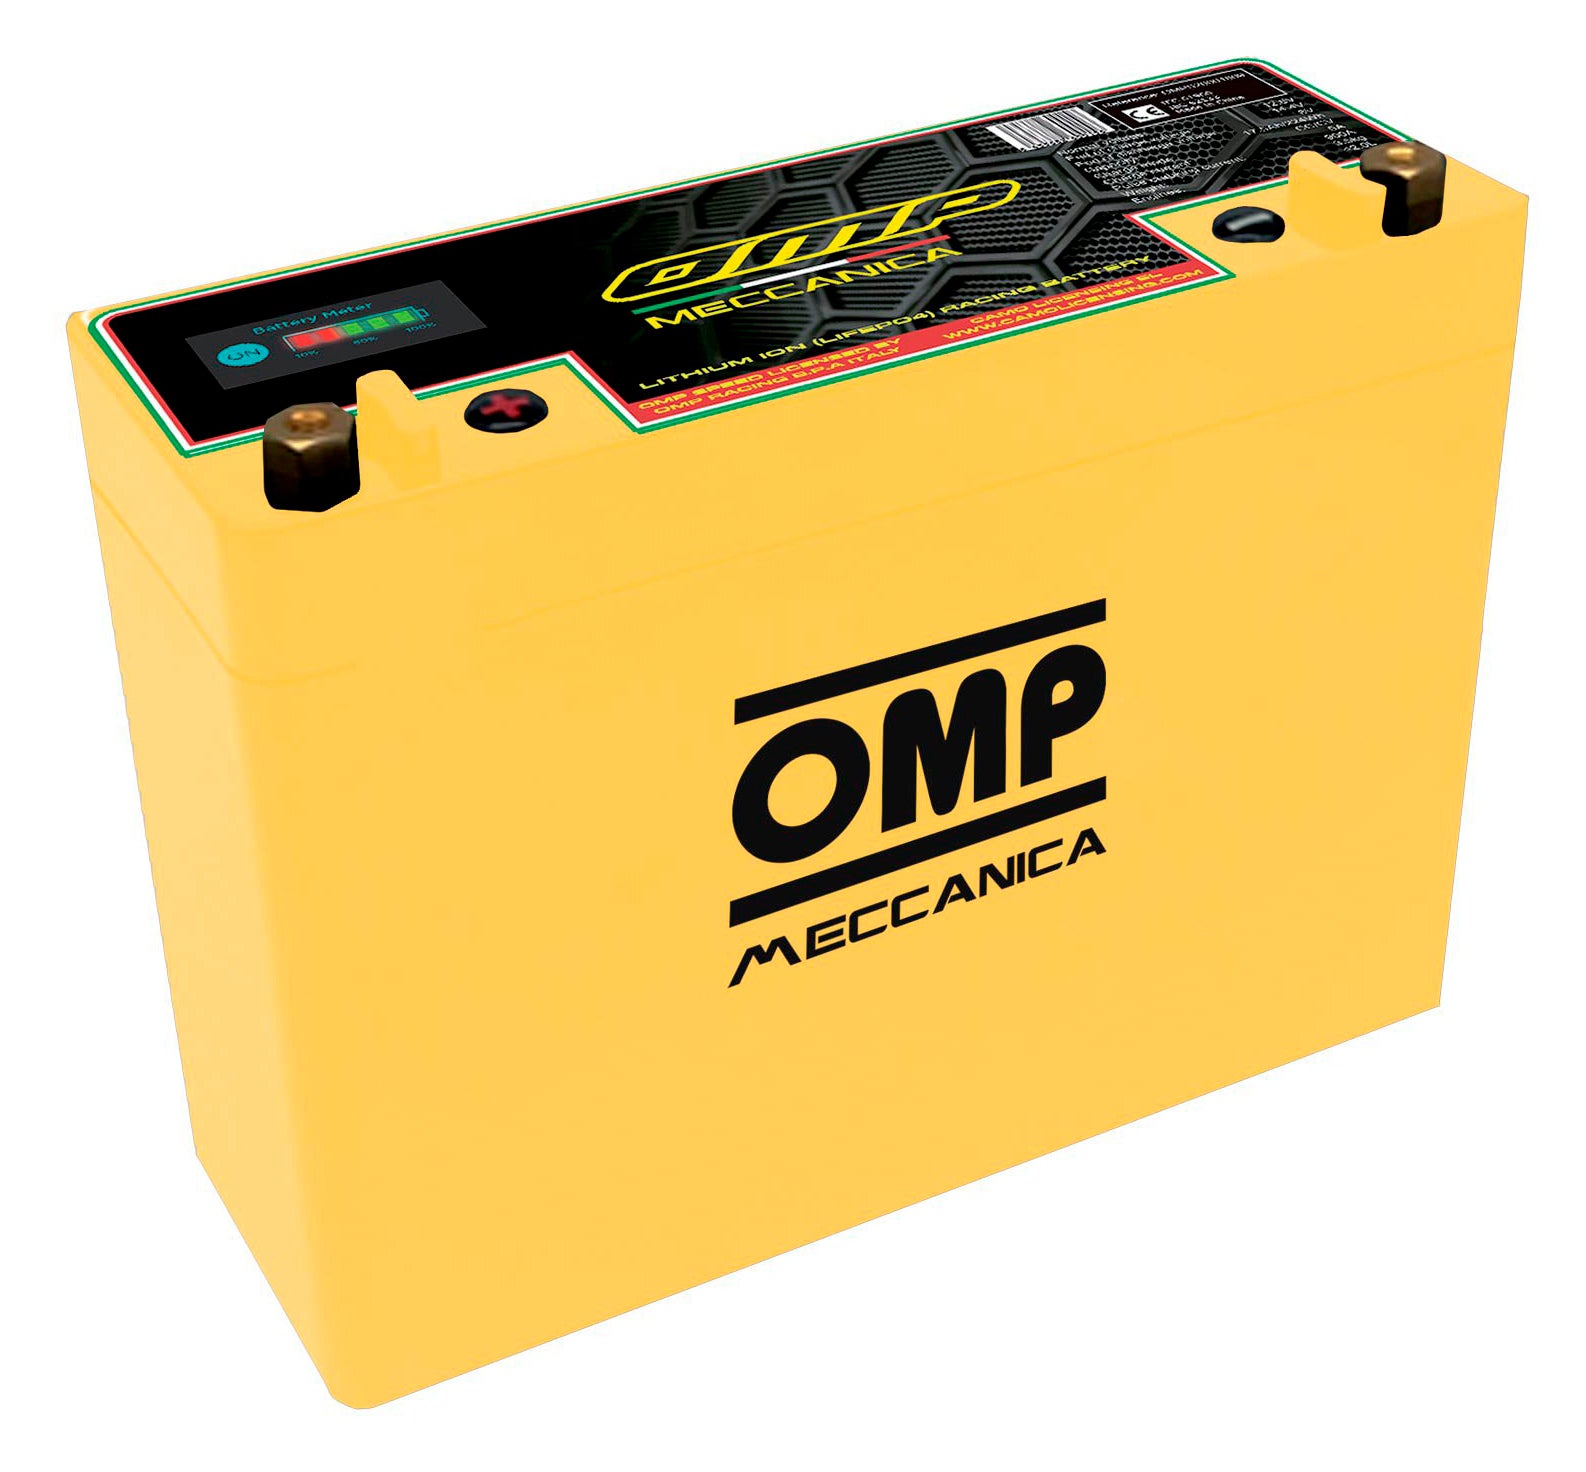 OMP OMPS20001809 літієвий акумулятор для машин з генератором, 20AH/256wh, PCC 1000A, 3.8 кг Photo-1 